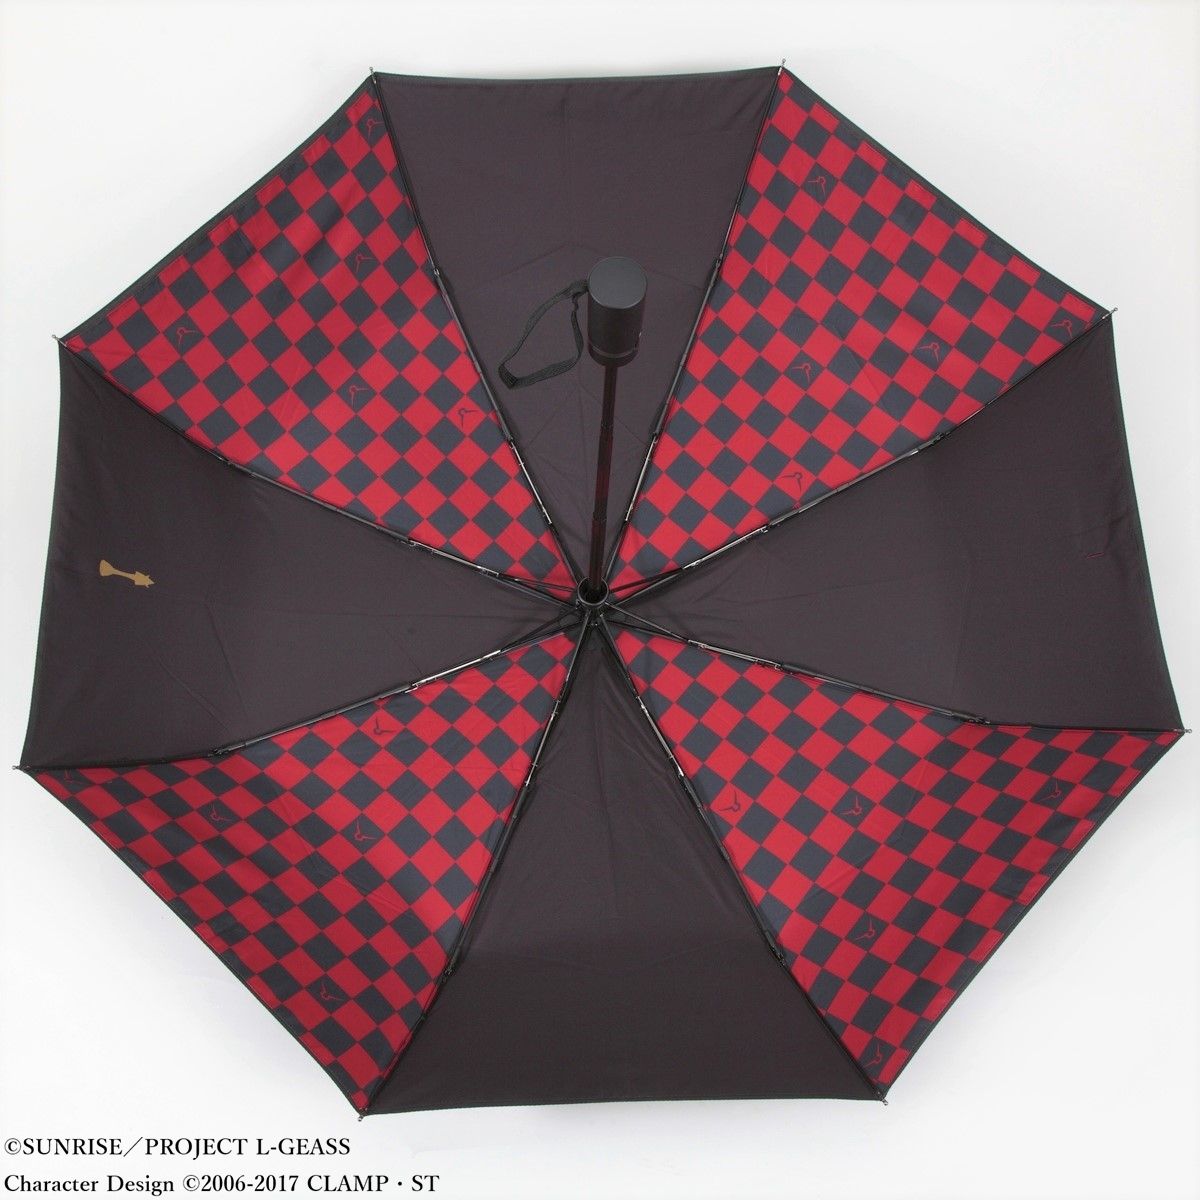 約315cmコードギアス 反逆のルルーシュ　UV晴雨兼用 折りたたみ傘　かさ　カサ